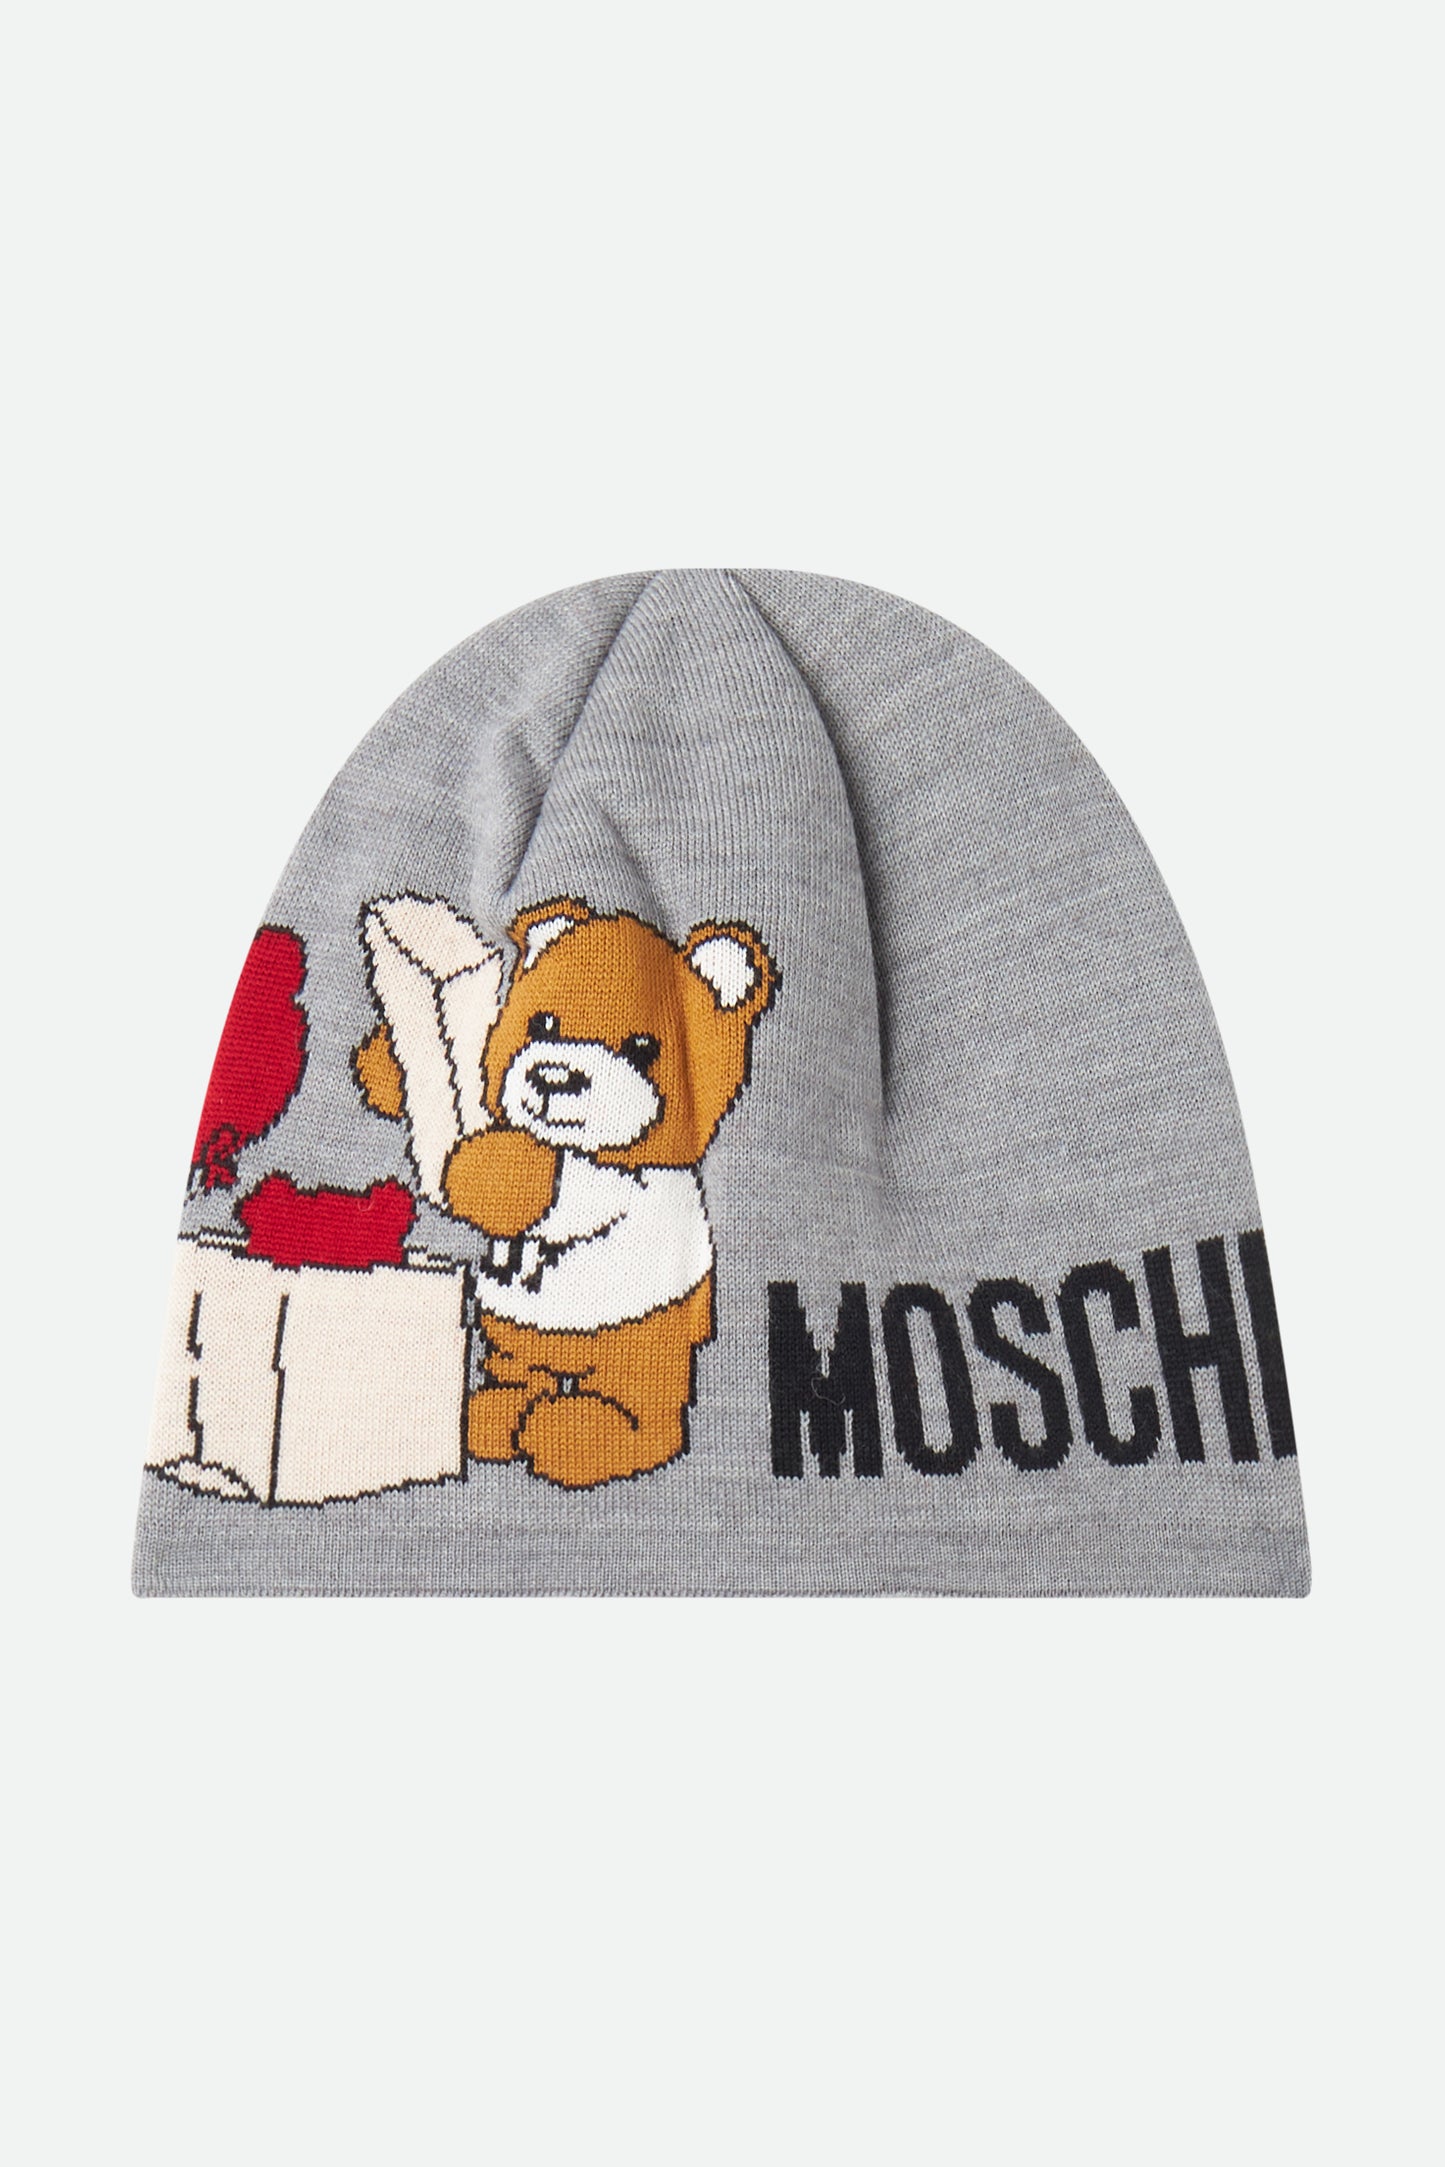 Moschino Gray Wool Hat